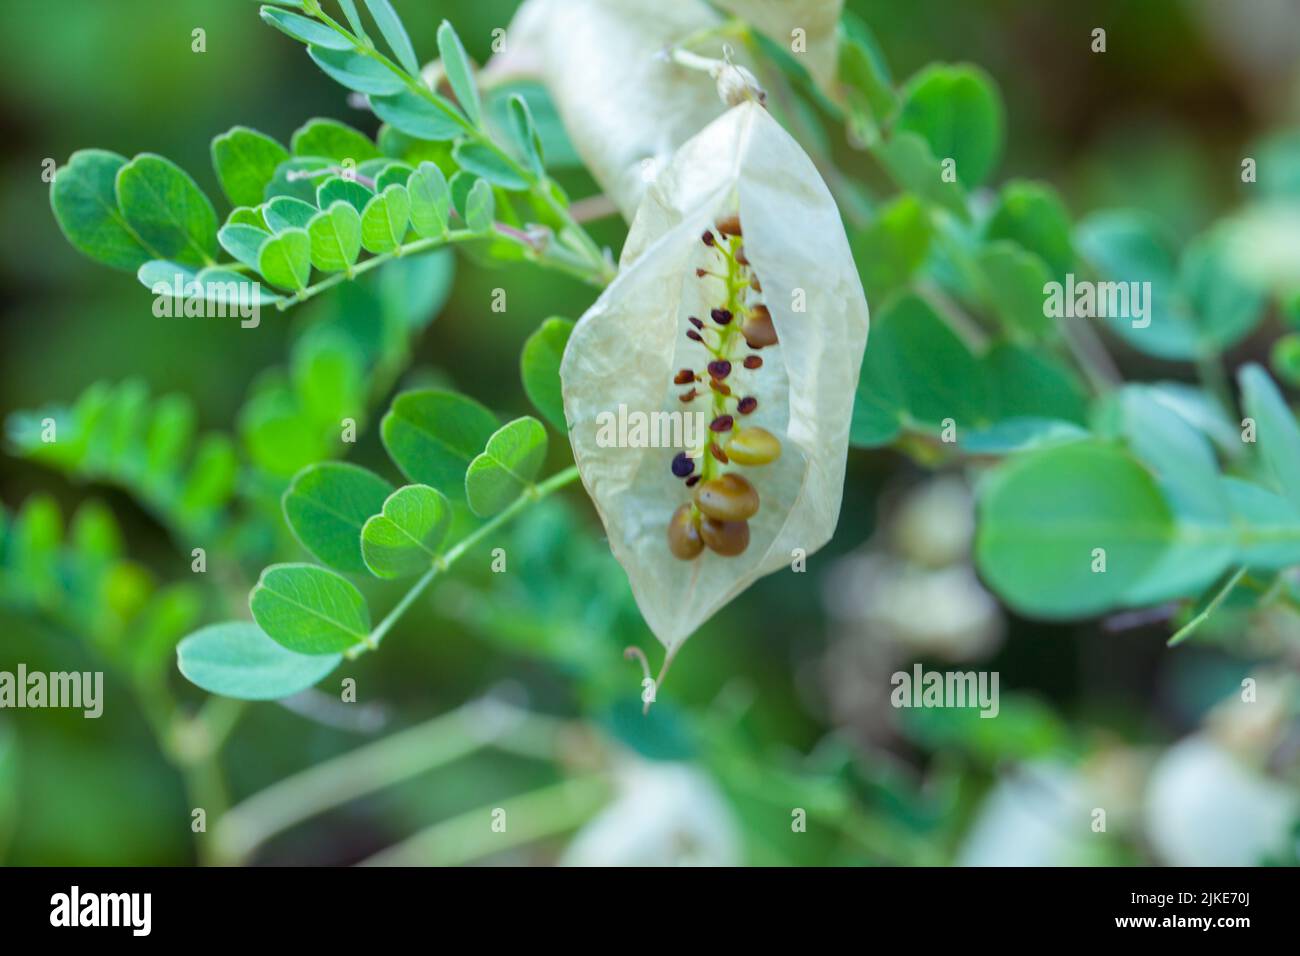 Primer plano de las vainas de la semilla de Colutea arborescens (planta común de la vejiga senna) que crece en Canvey Wick Nature Reserve, Essex, Gran Bretaña. Foto de stock